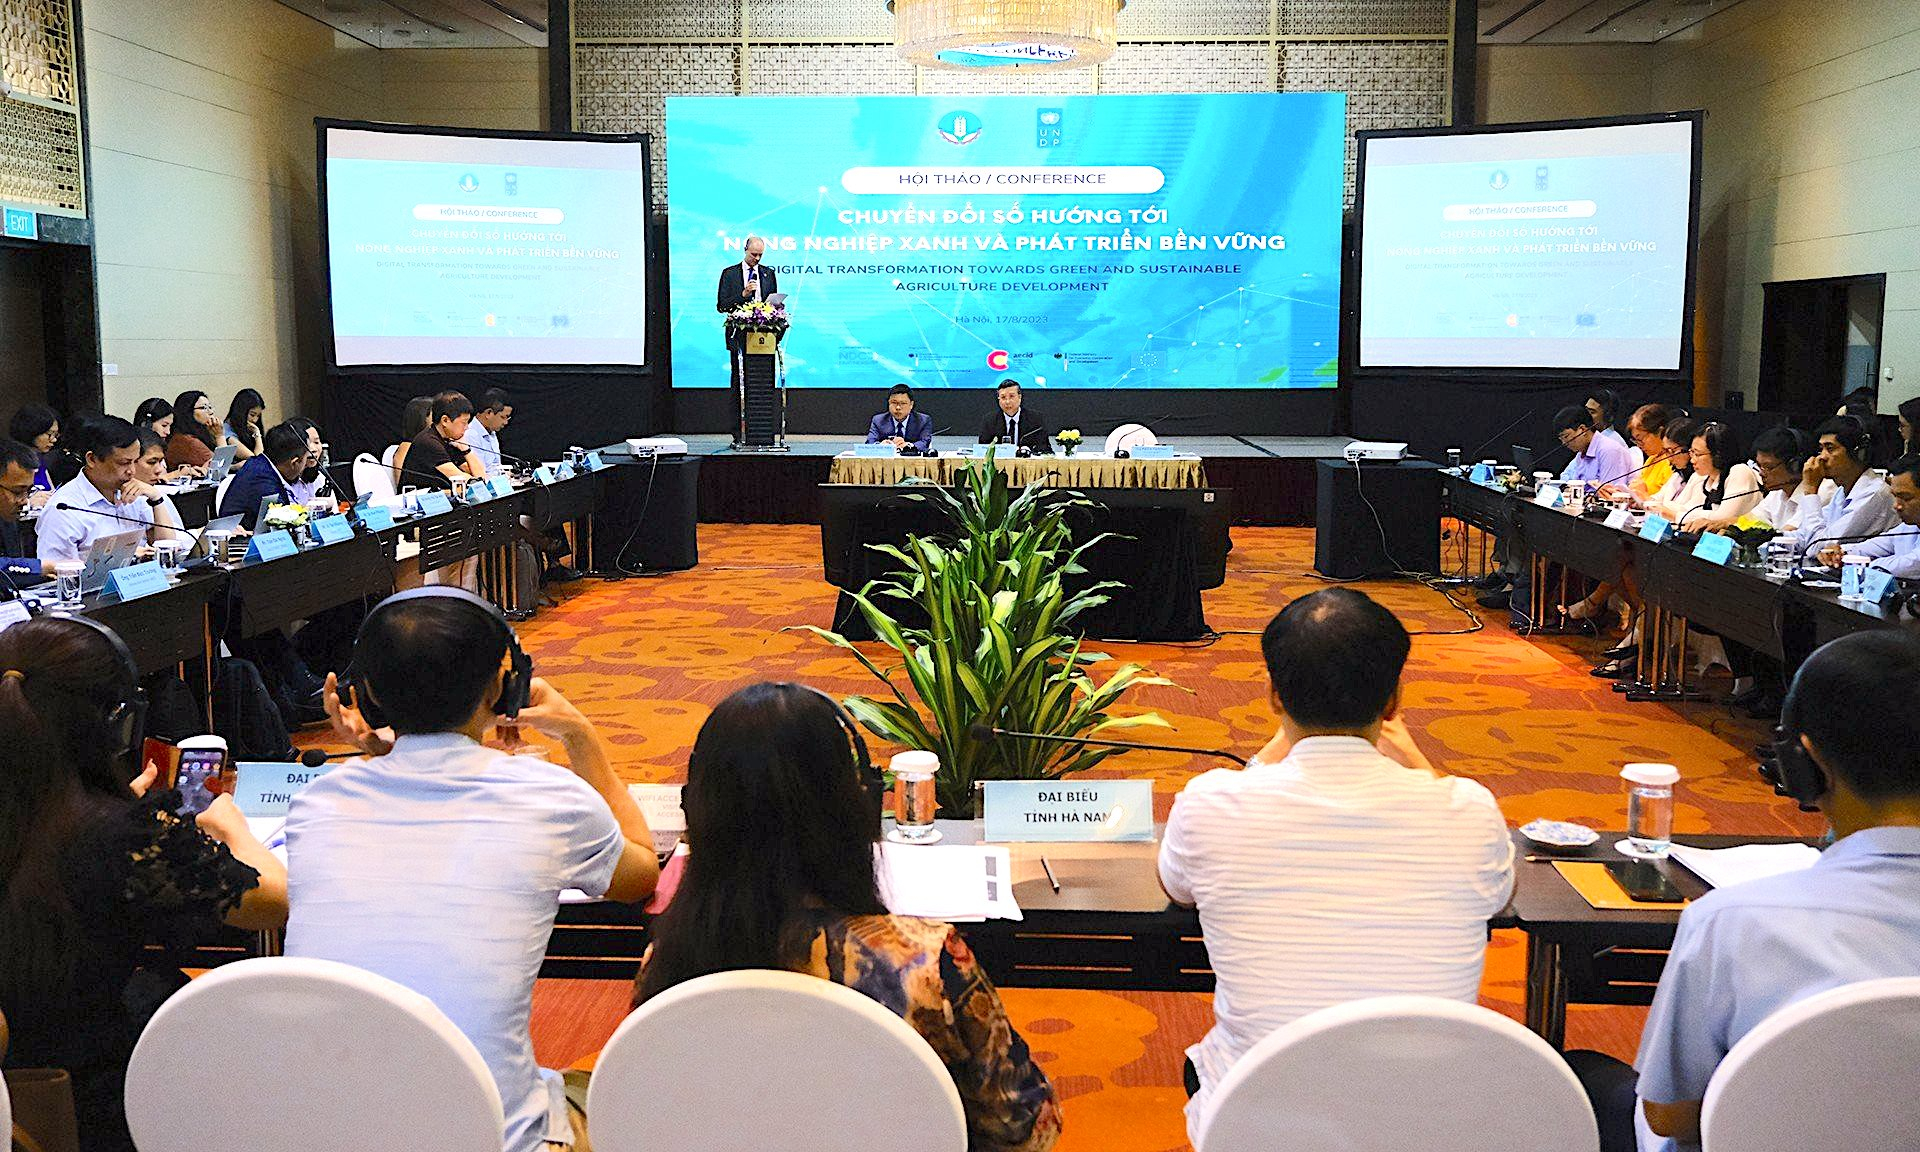 Ông Patrick Haverman, Phó Trưởng đại diện thường trú của UNDP tại Việt Nam, tin tưởng rằng việc sử dụng công nghệ có thể giúp thúc đẩy các hoạt động kinh doanh thông minh phù hợp với khí hậu và tăng sinh kế bền vững của nông dân địa phương. Ảnh: Bảo Thắng.